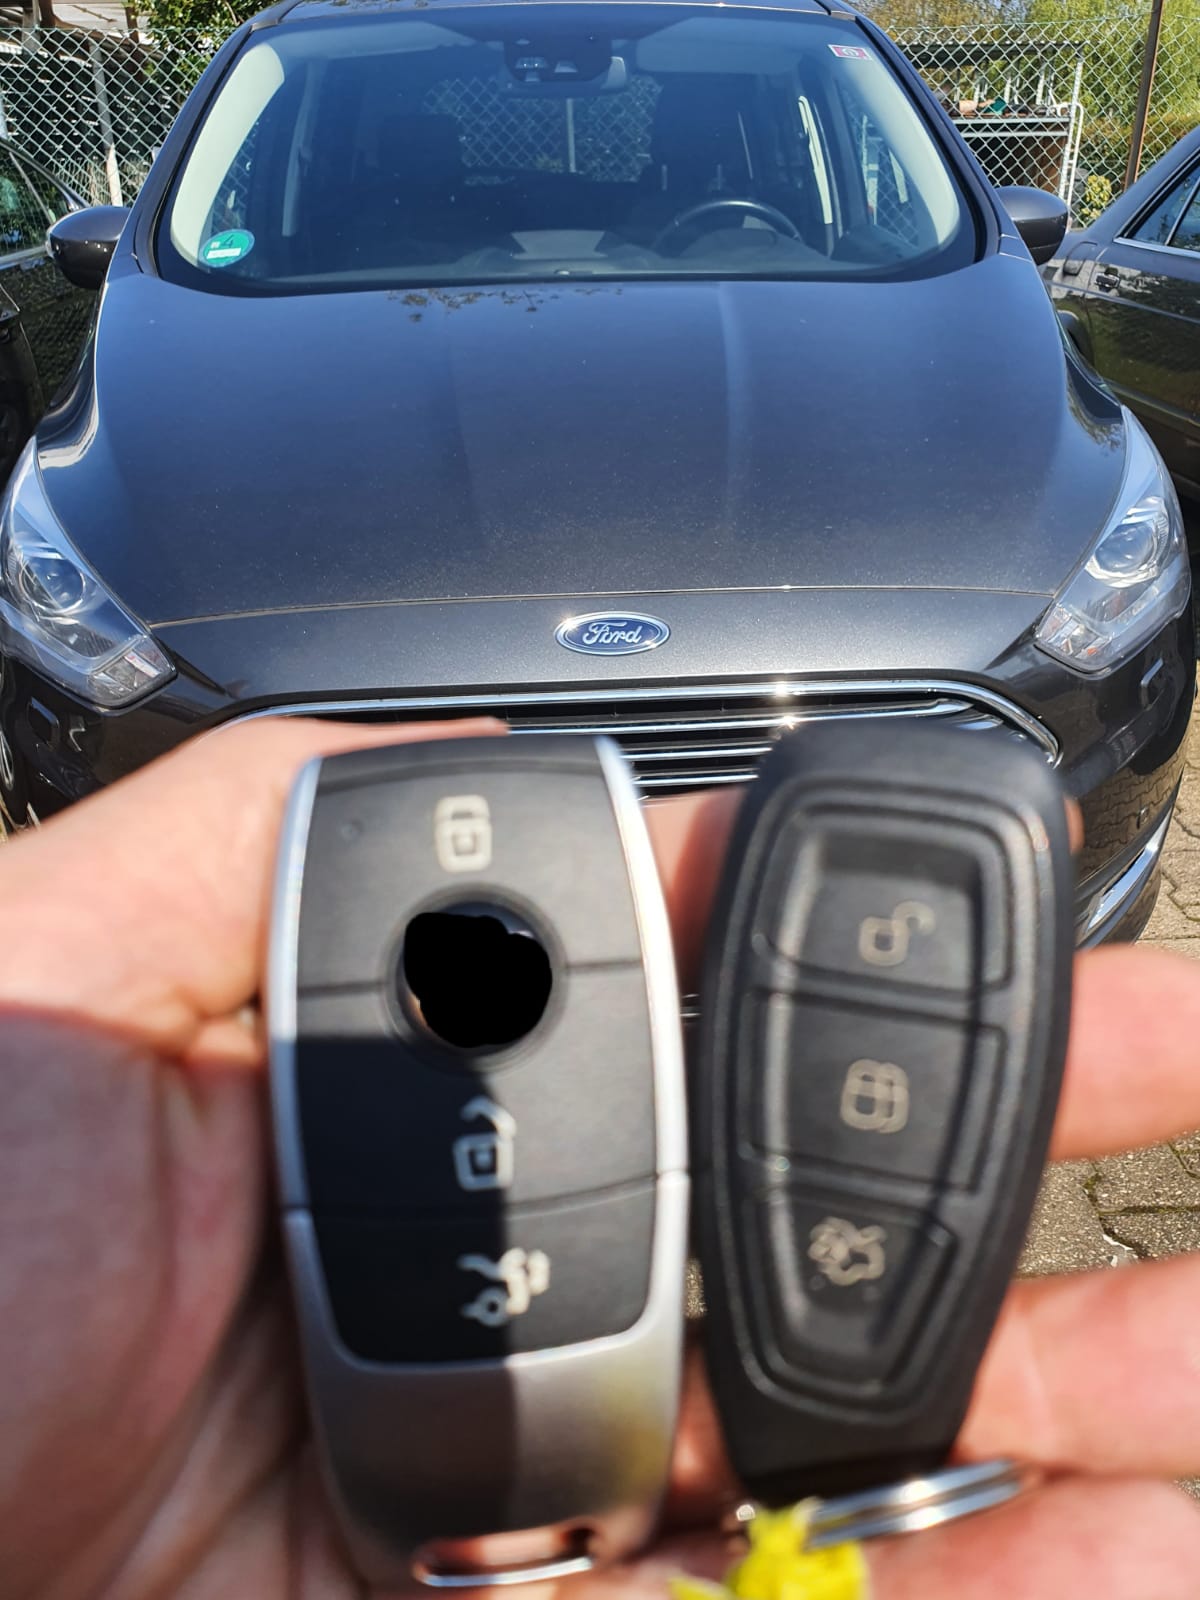 Ford Autoschlüssel defekt verloren neu ab 49€ nachmachen